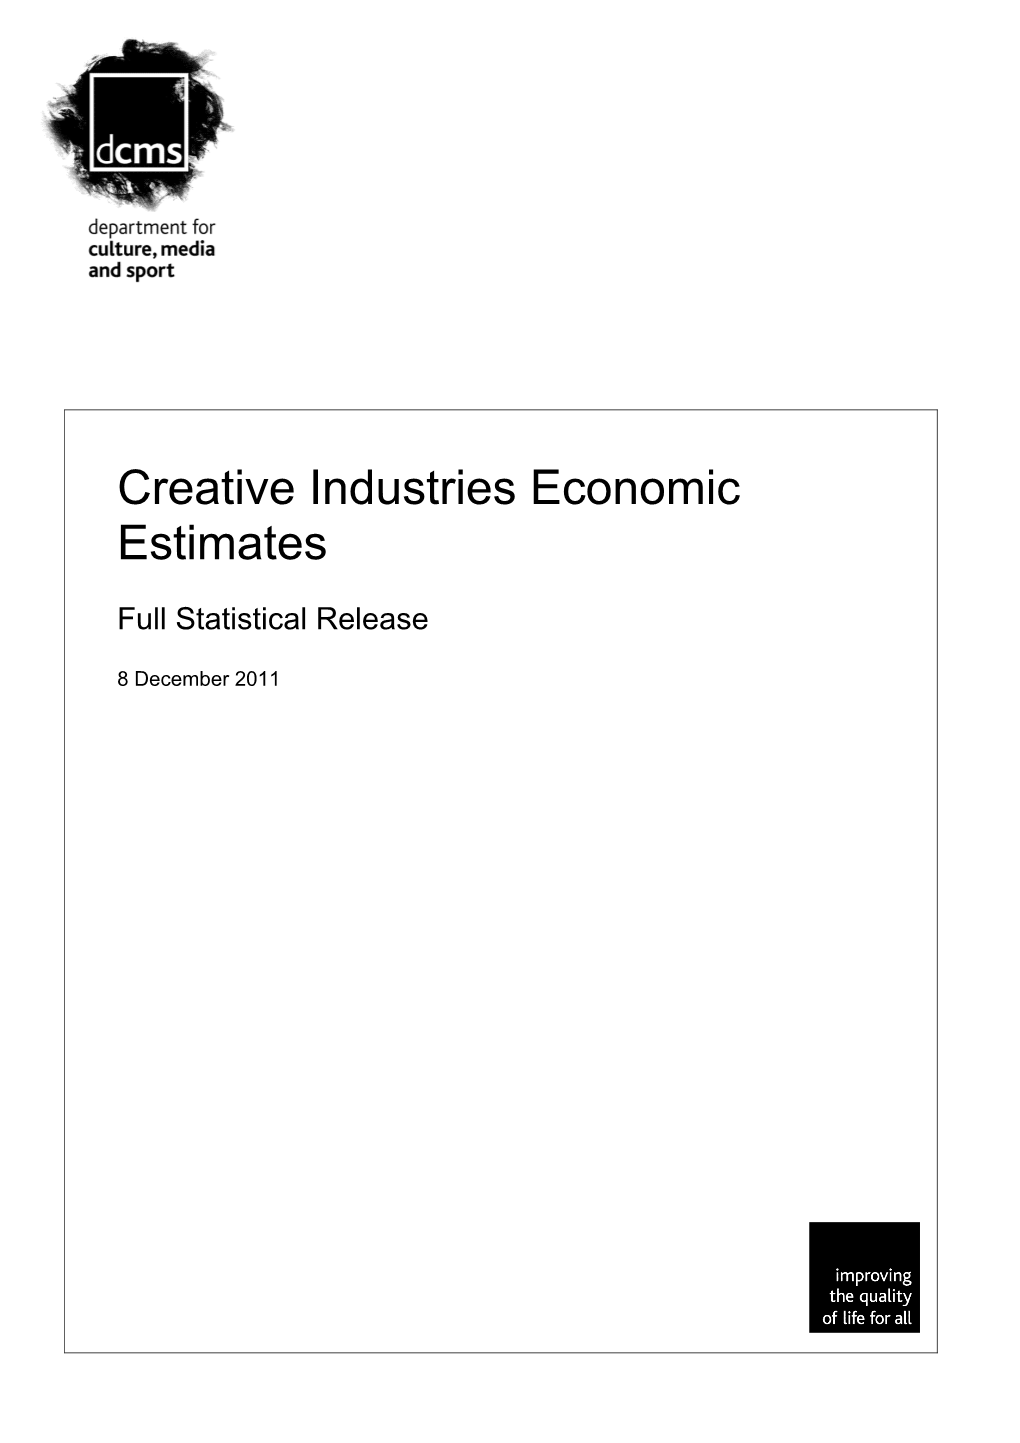 Creative Industries Economic Estimates 2011